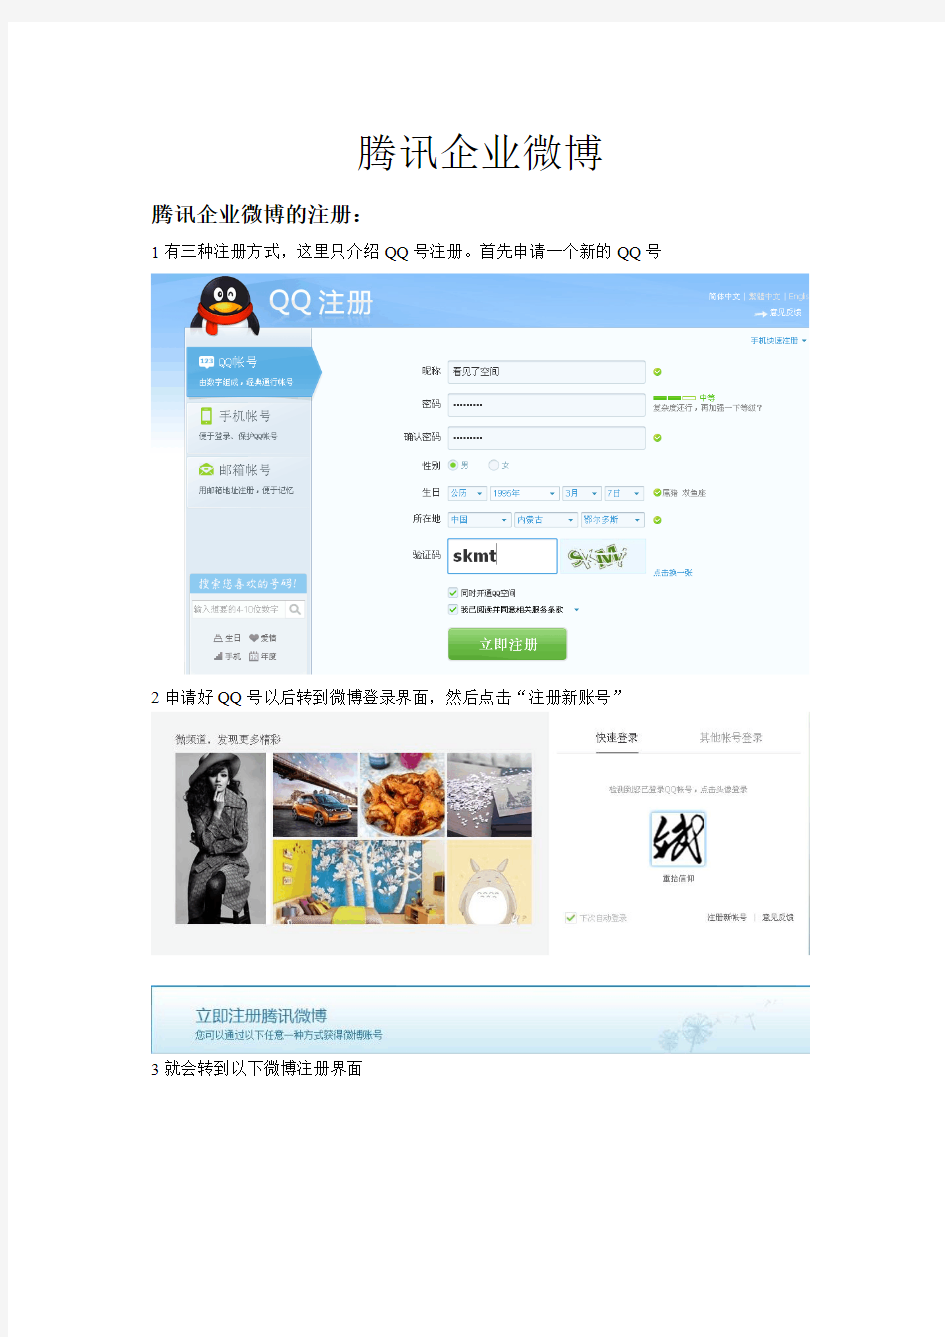 腾讯新浪企业微博注册及使用